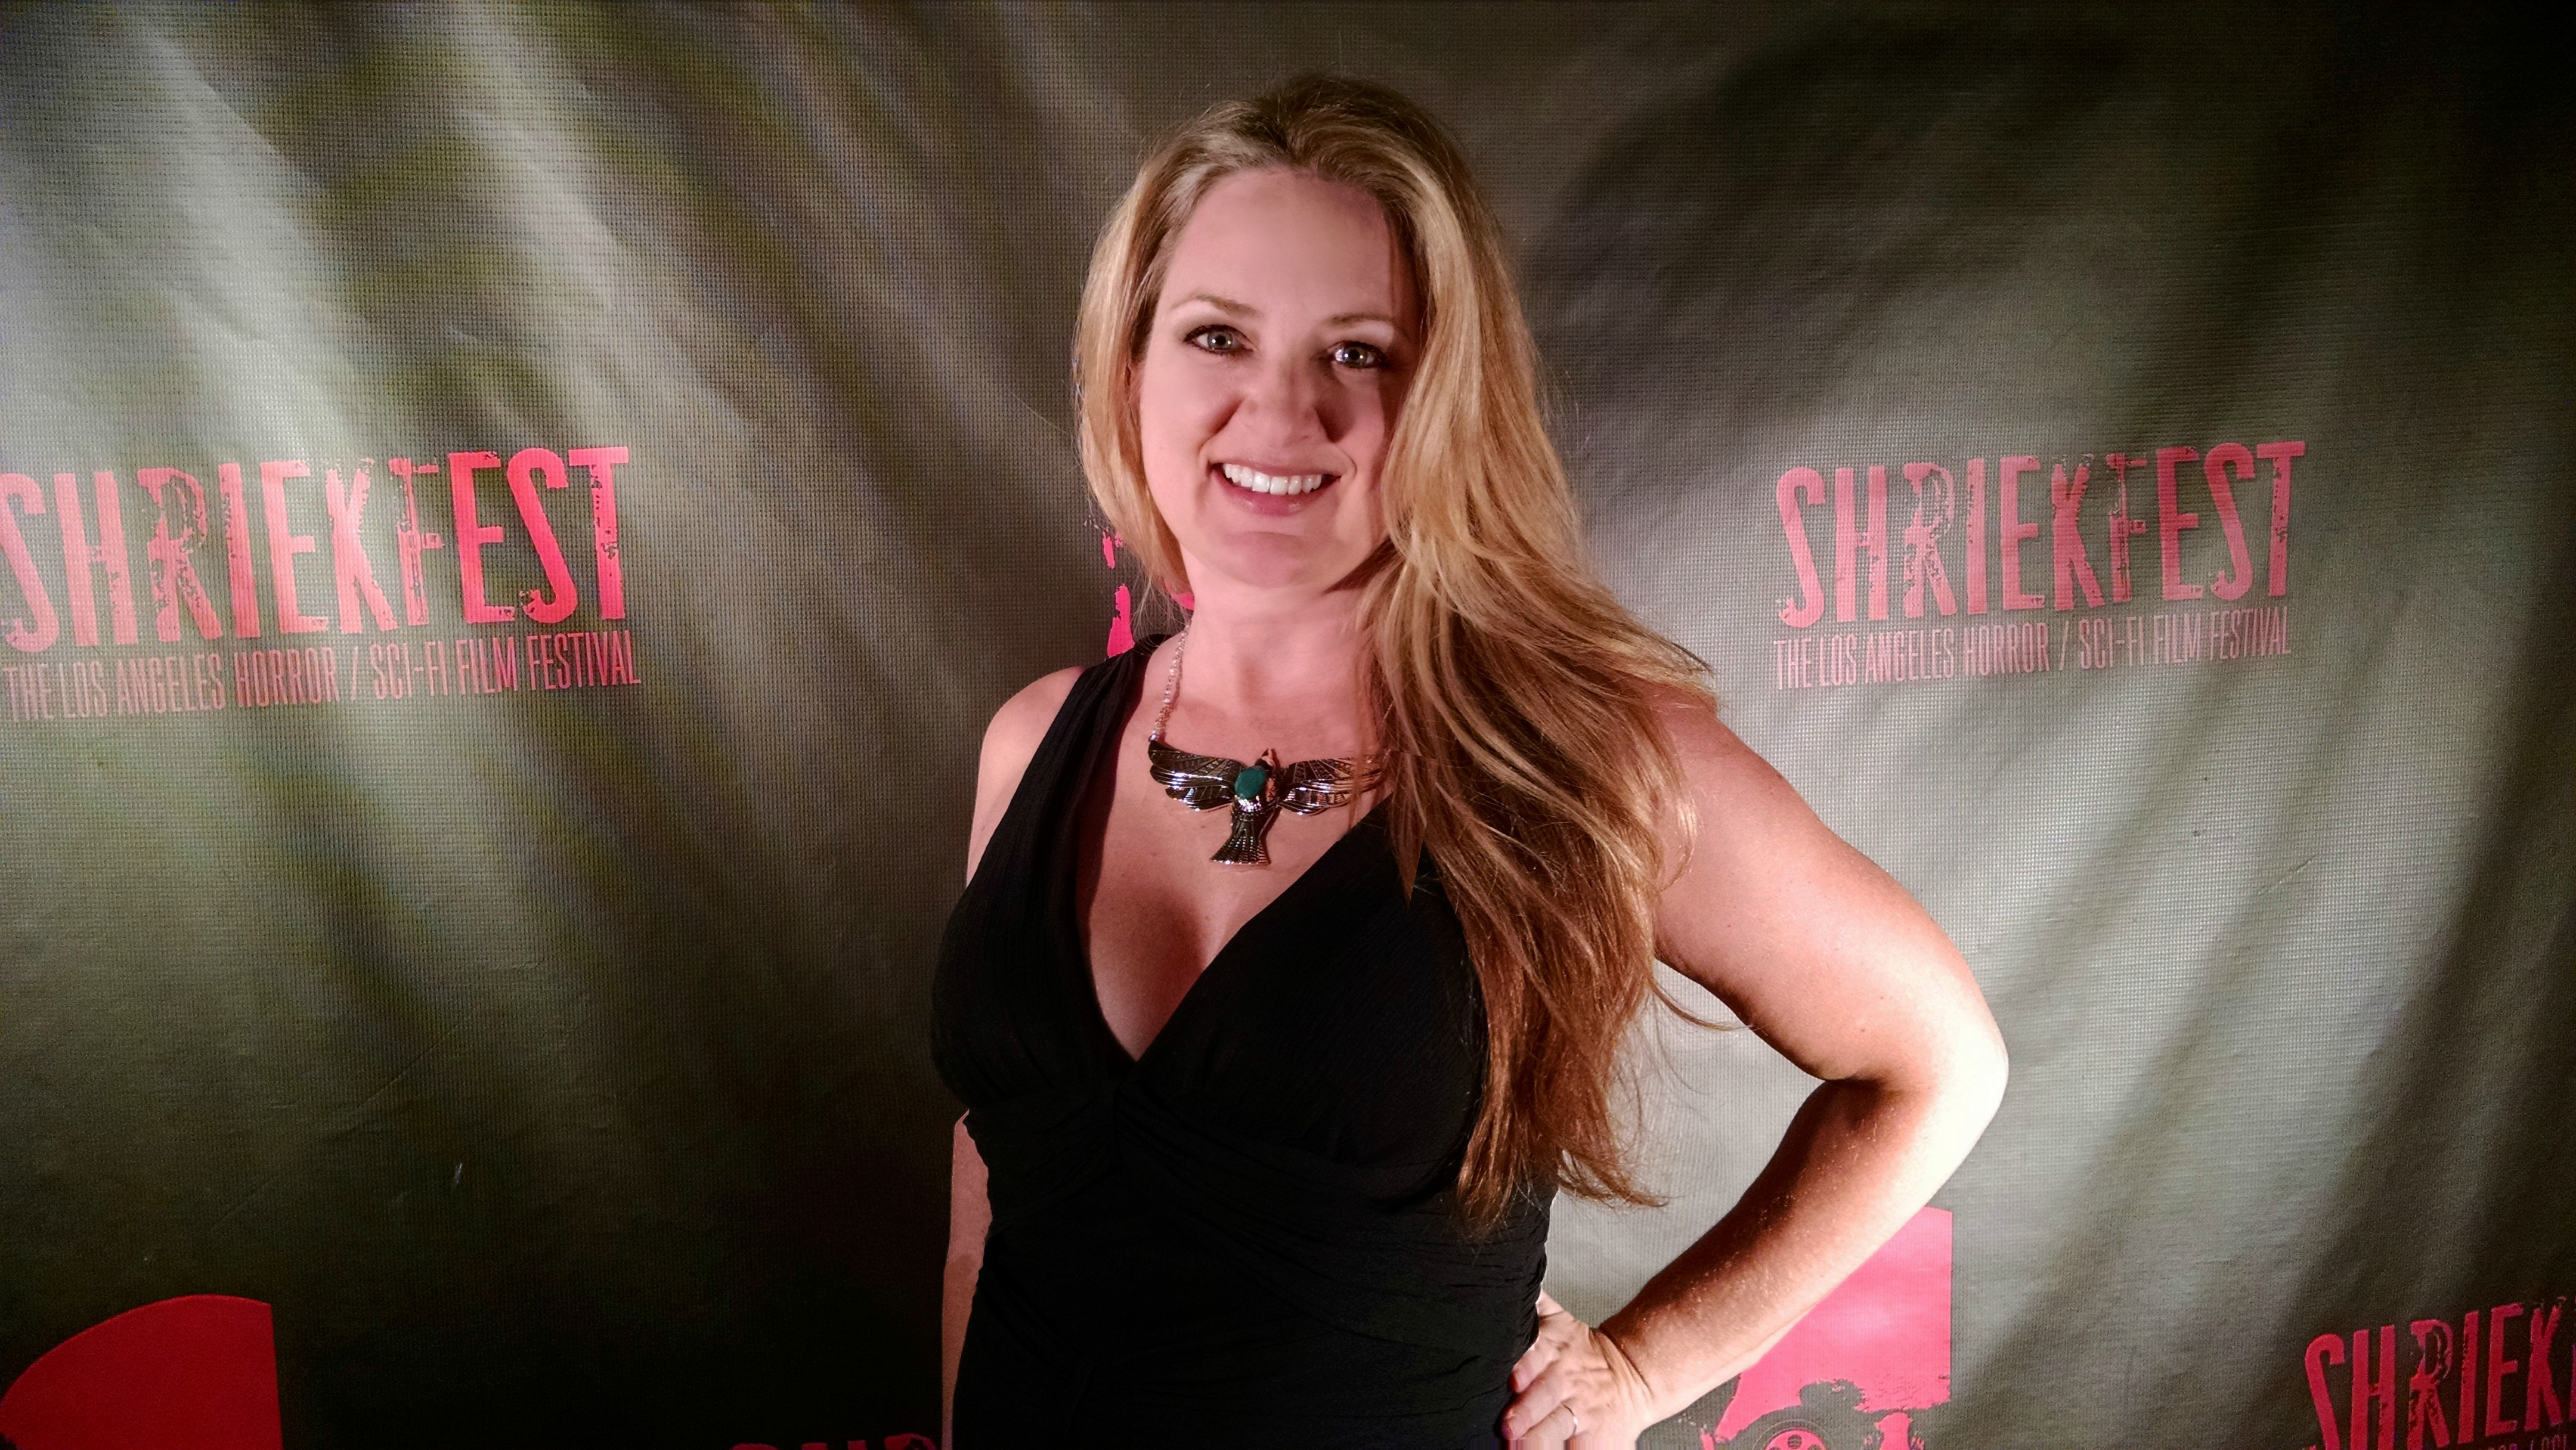 Shriekfest Horror / Sci Fi Film Festival 2014